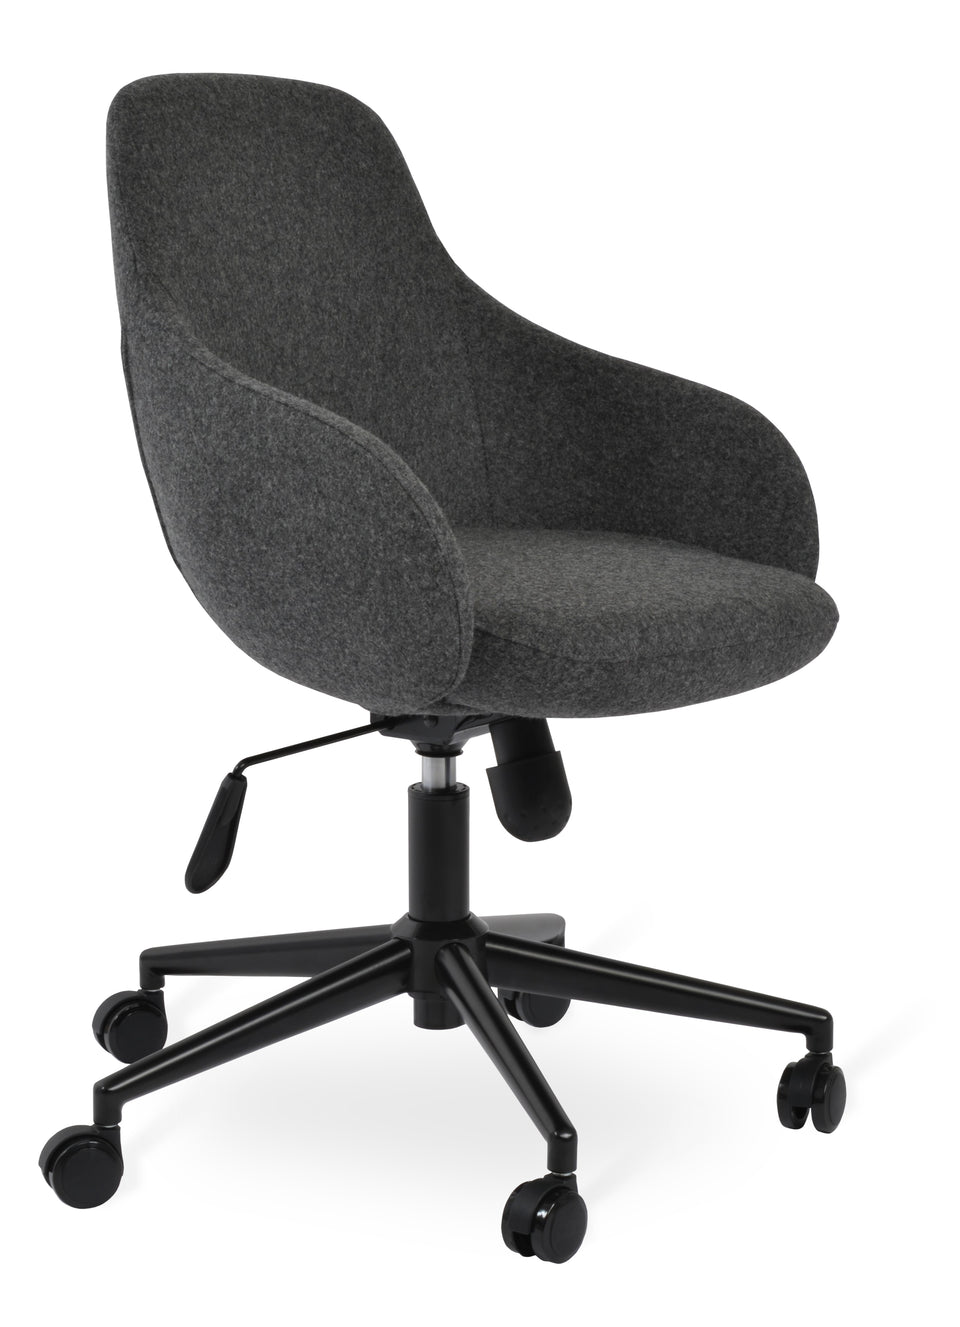 Gazel Arm Office Chair.